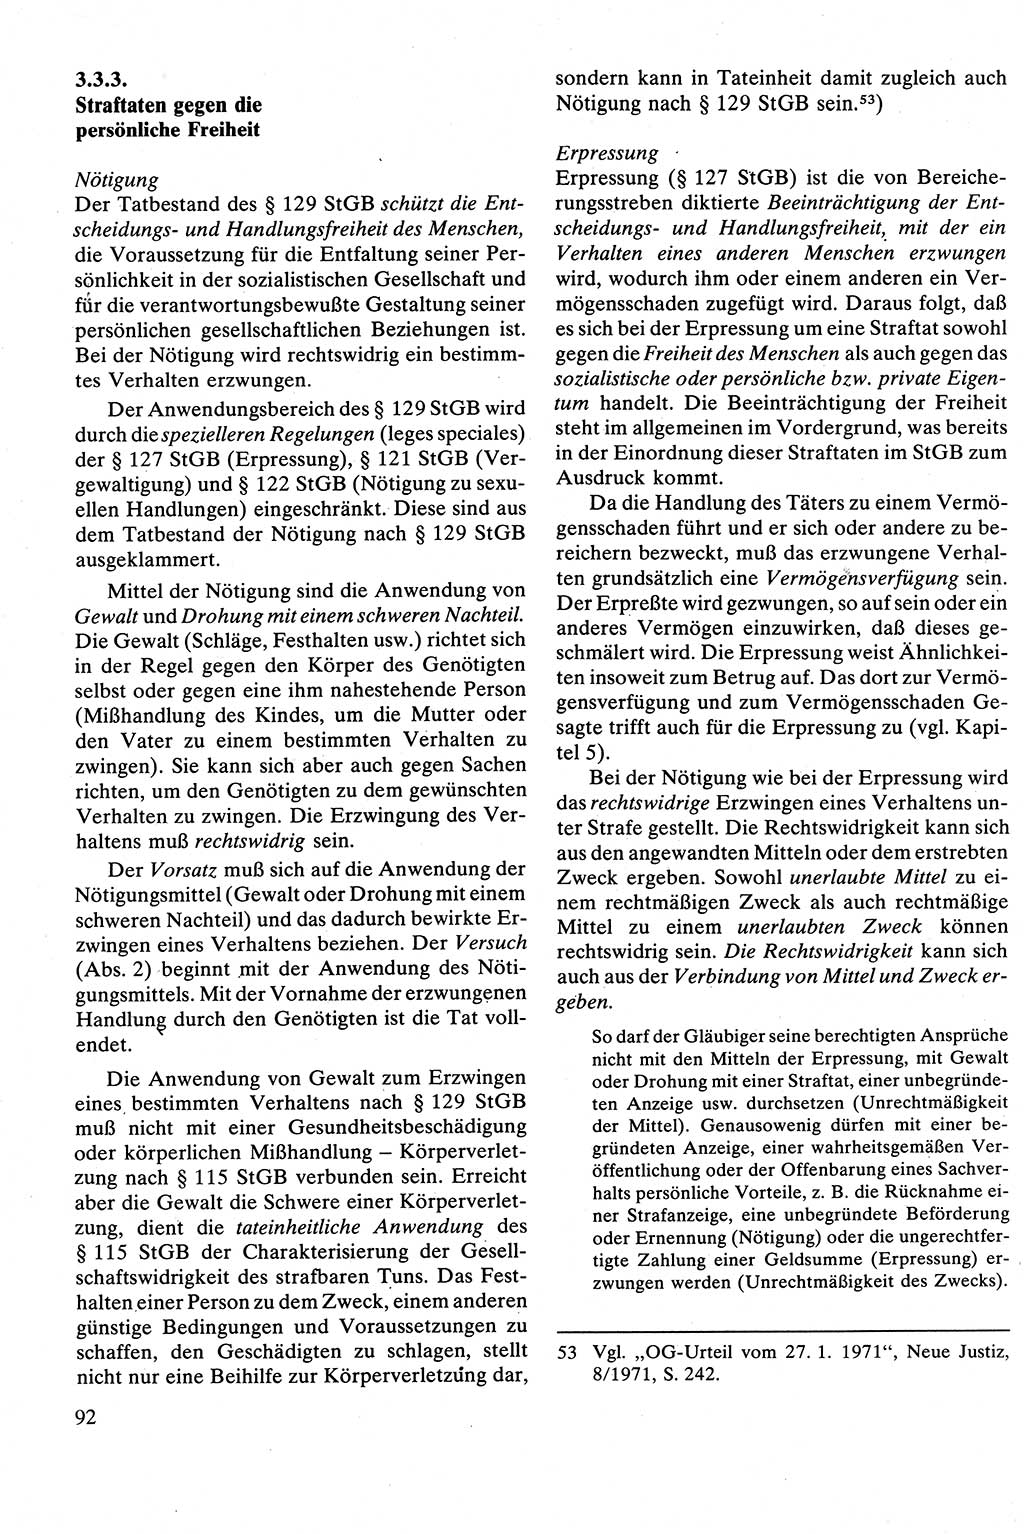 Strafrecht [Deutsche Demokratische Republik (DDR)], Besonderer Teil, Lehrbuch 1981, Seite 92 (Strafr. DDR BT Lb. 1981, S. 92)